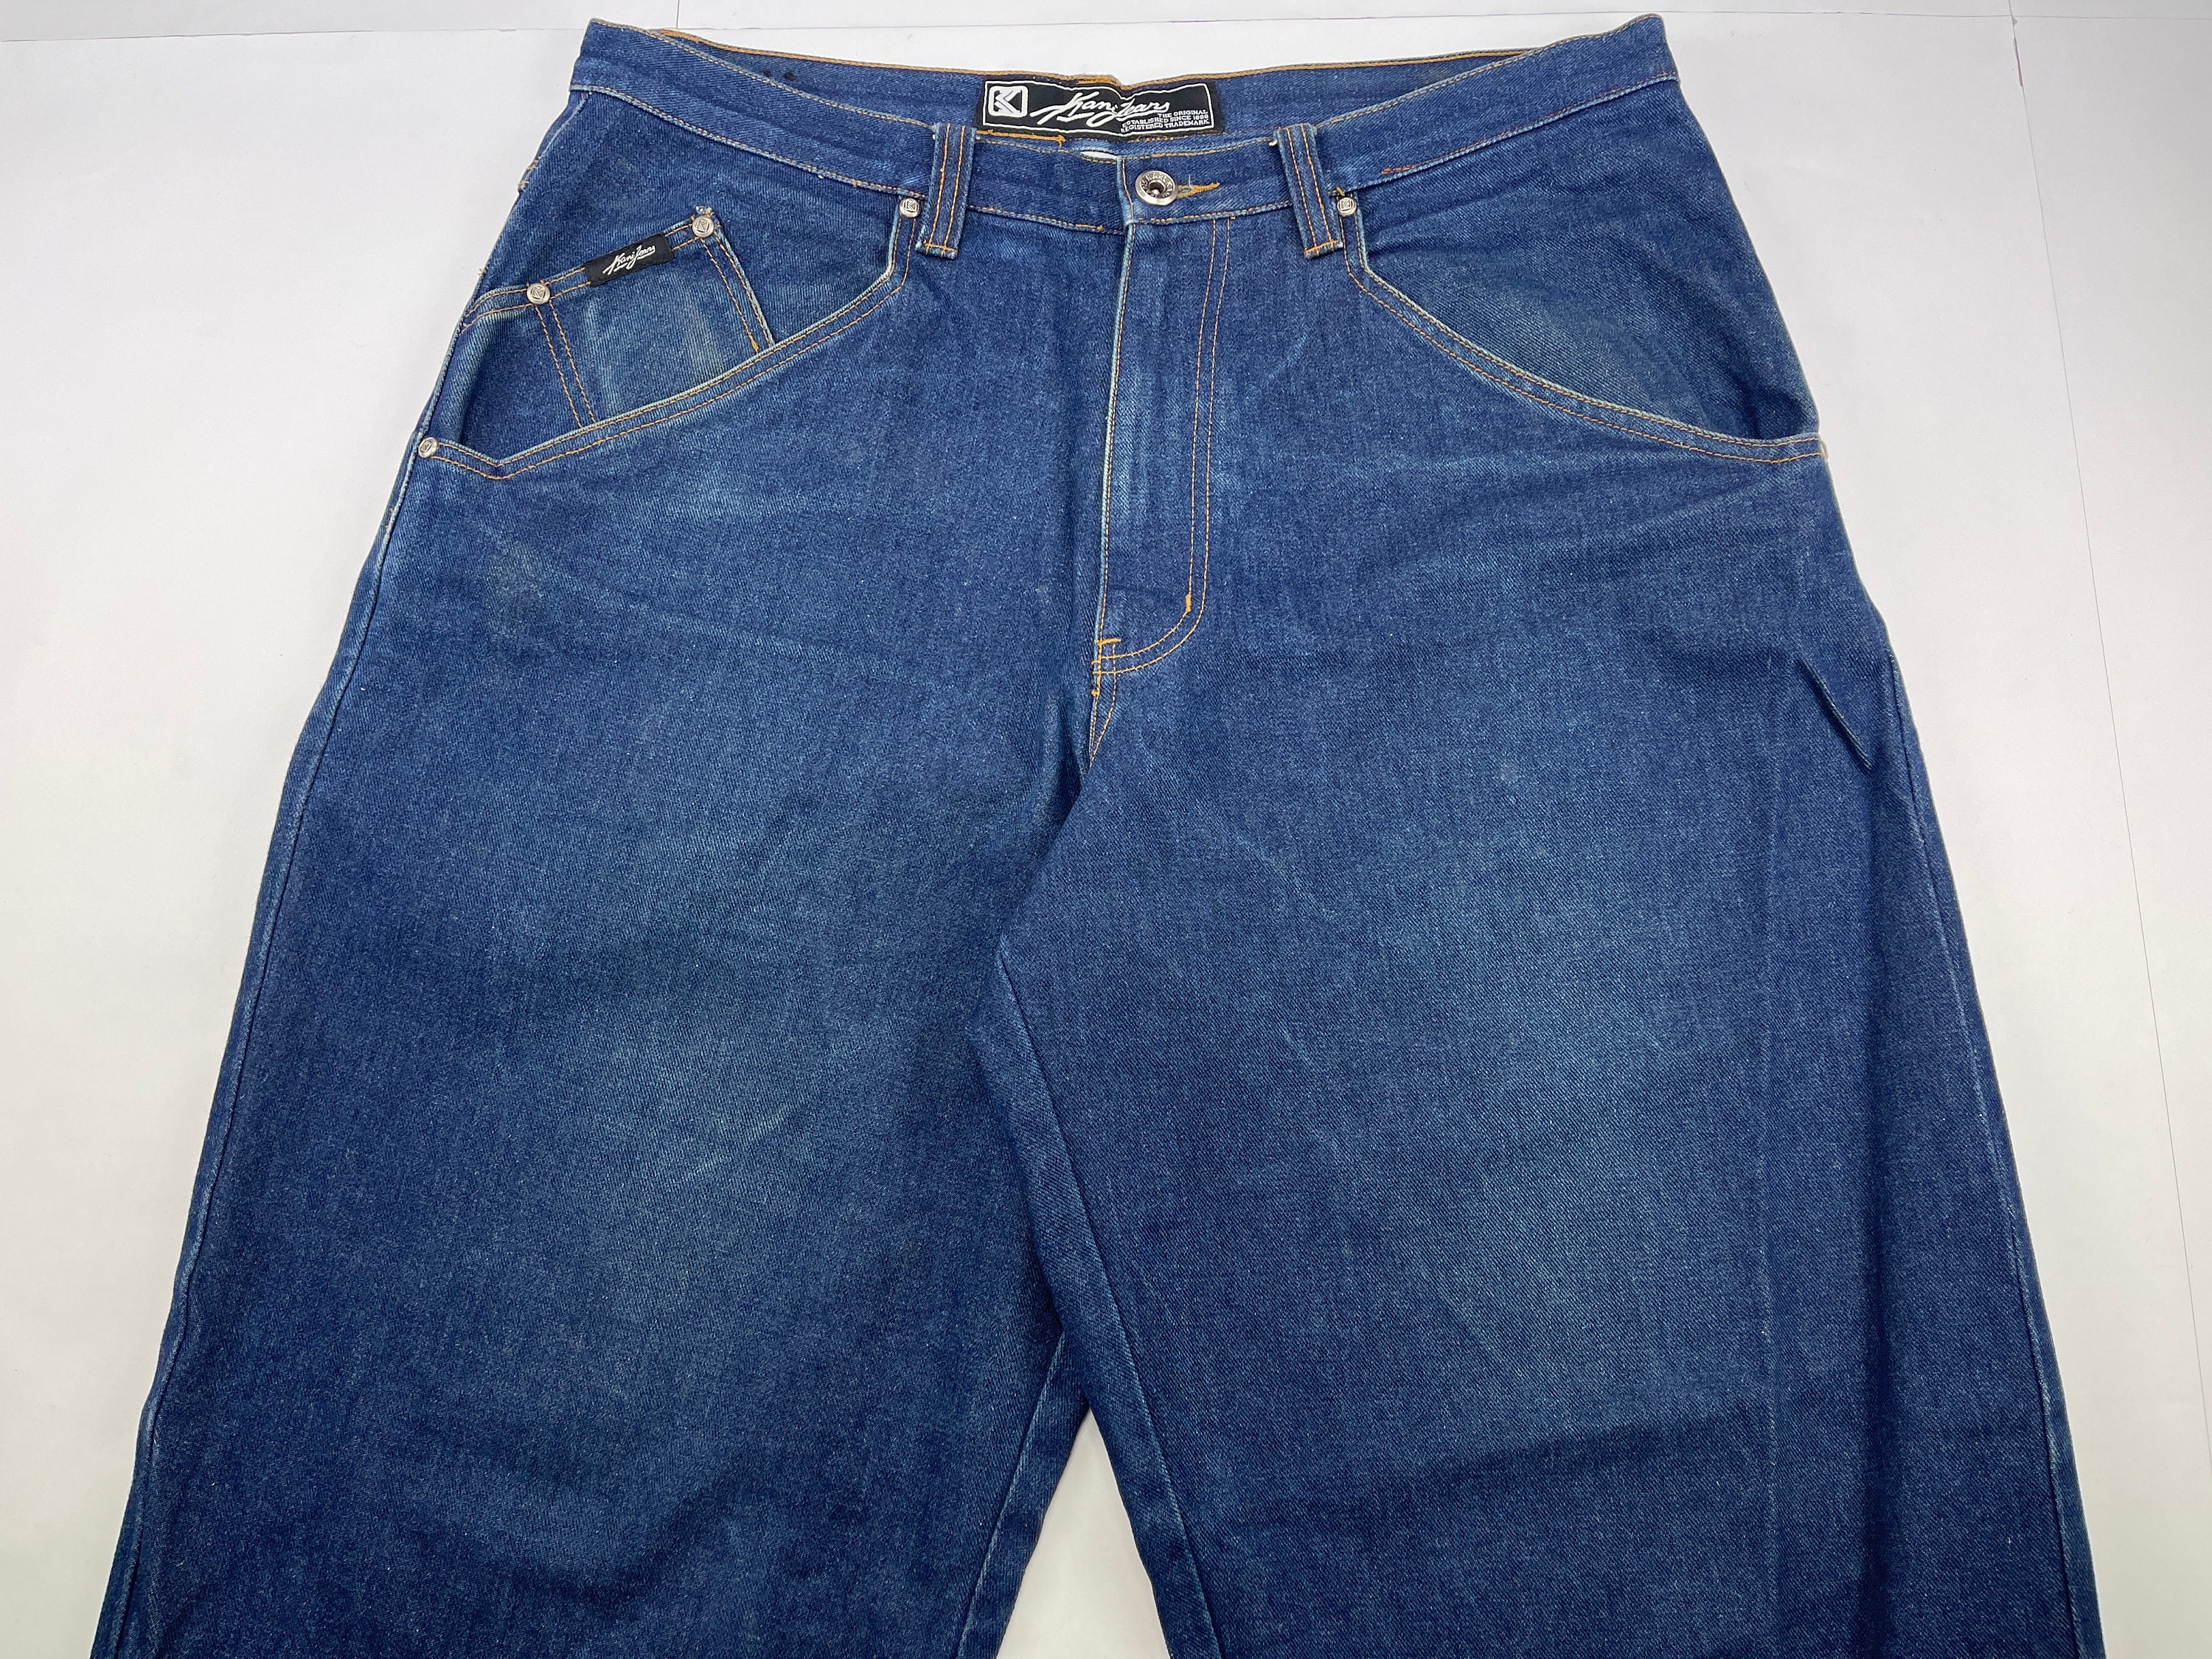 KARL KANI jeans vintage baggy Kani jeans loose blue 90s hip | Etsy